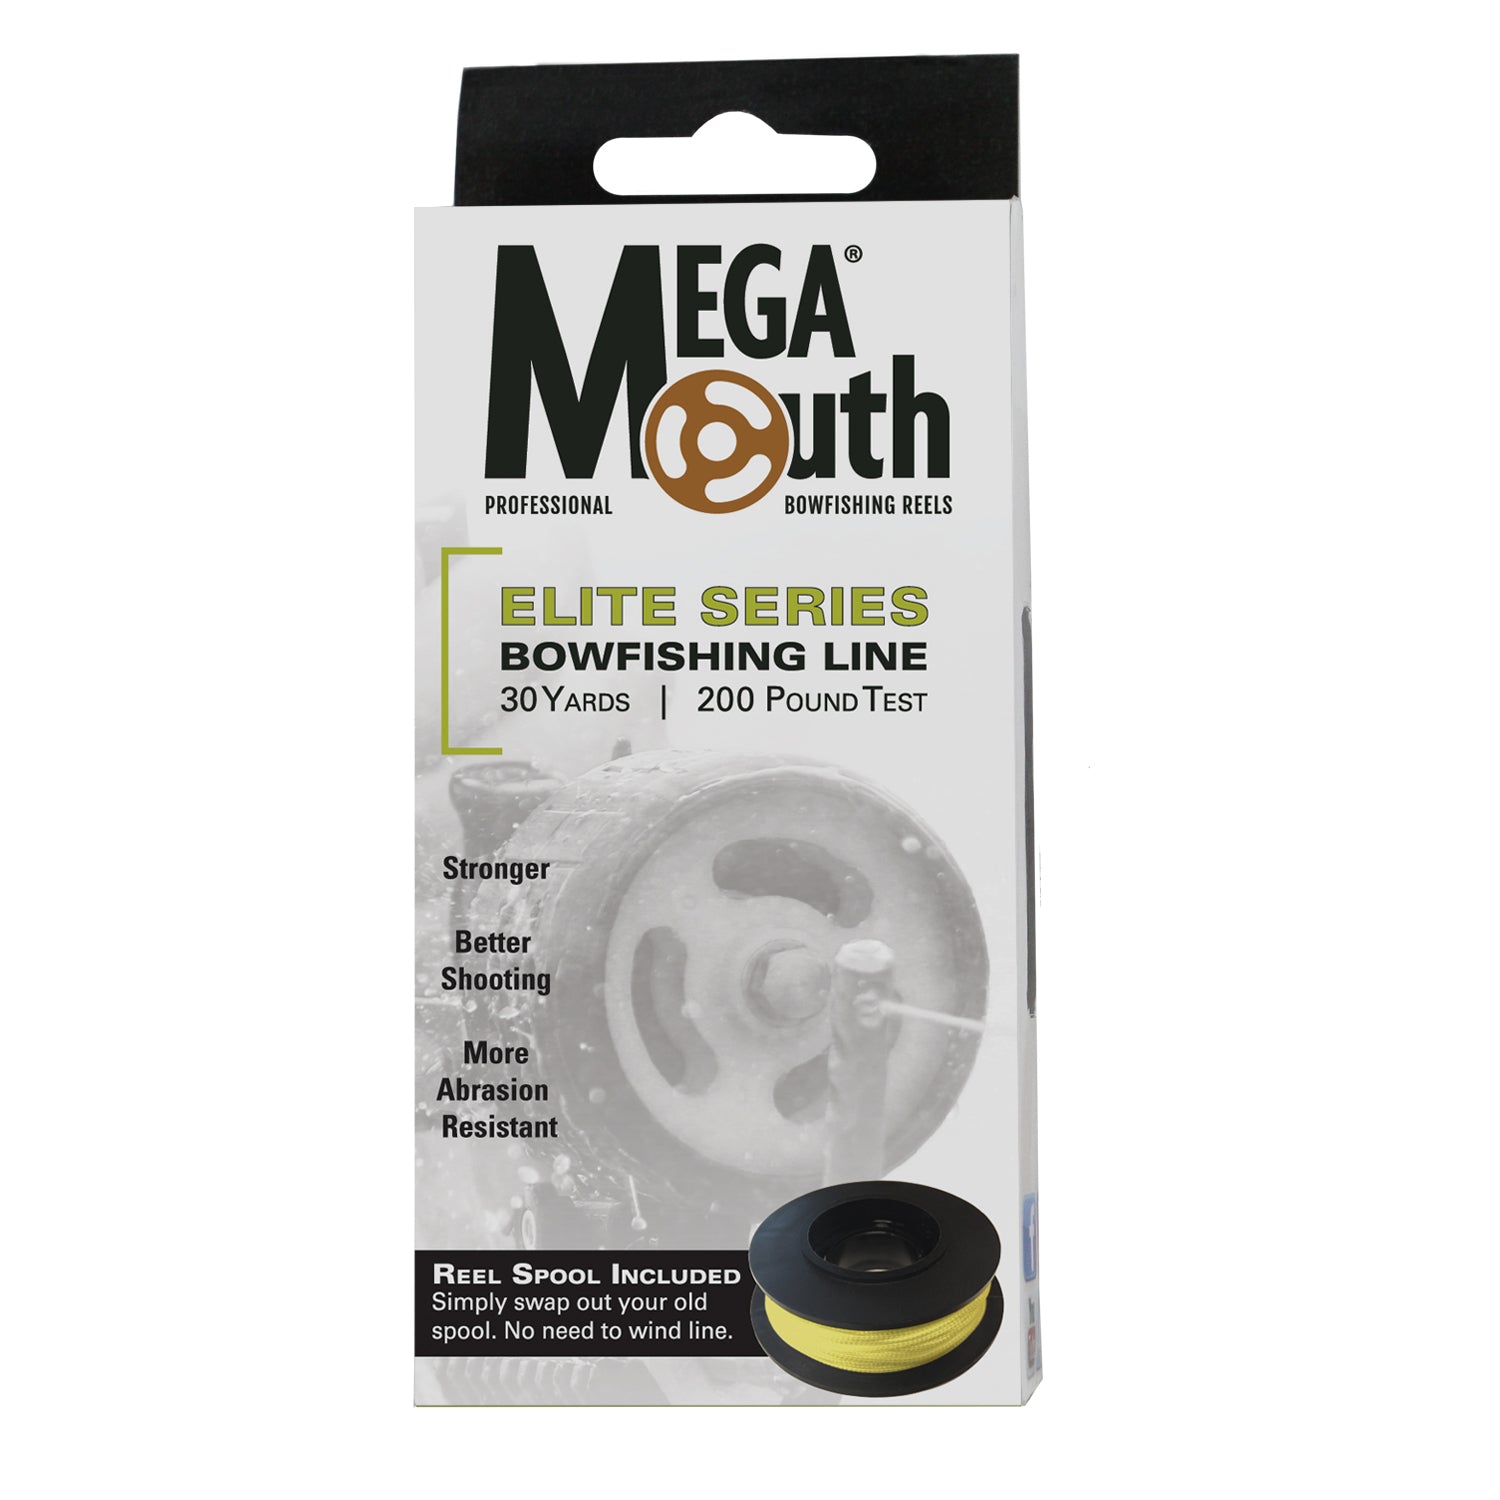 Megamouth 2.0 Bowfishing Reel